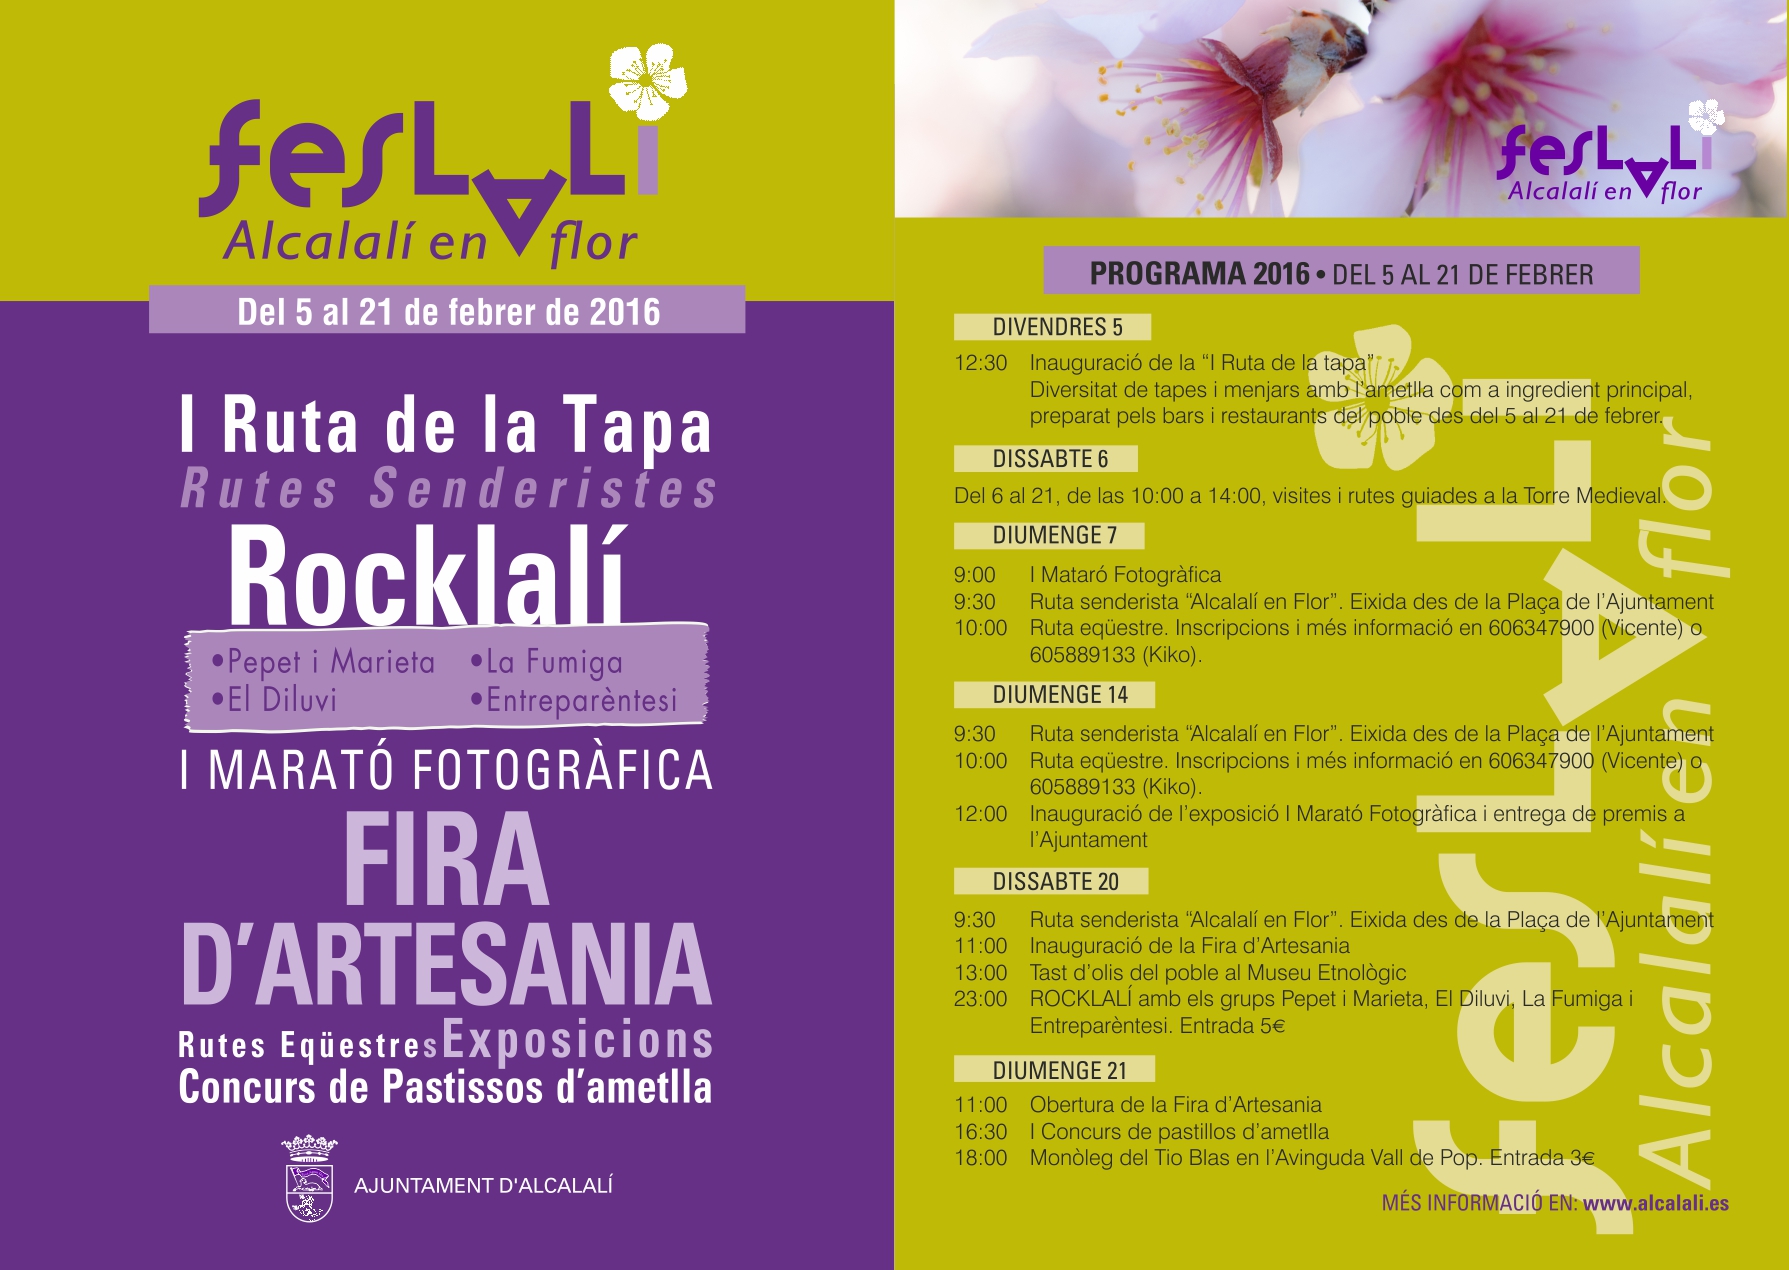 Cartel y programación FESLALÍ "Alcalalí en flor" - Alcalalí Turismo